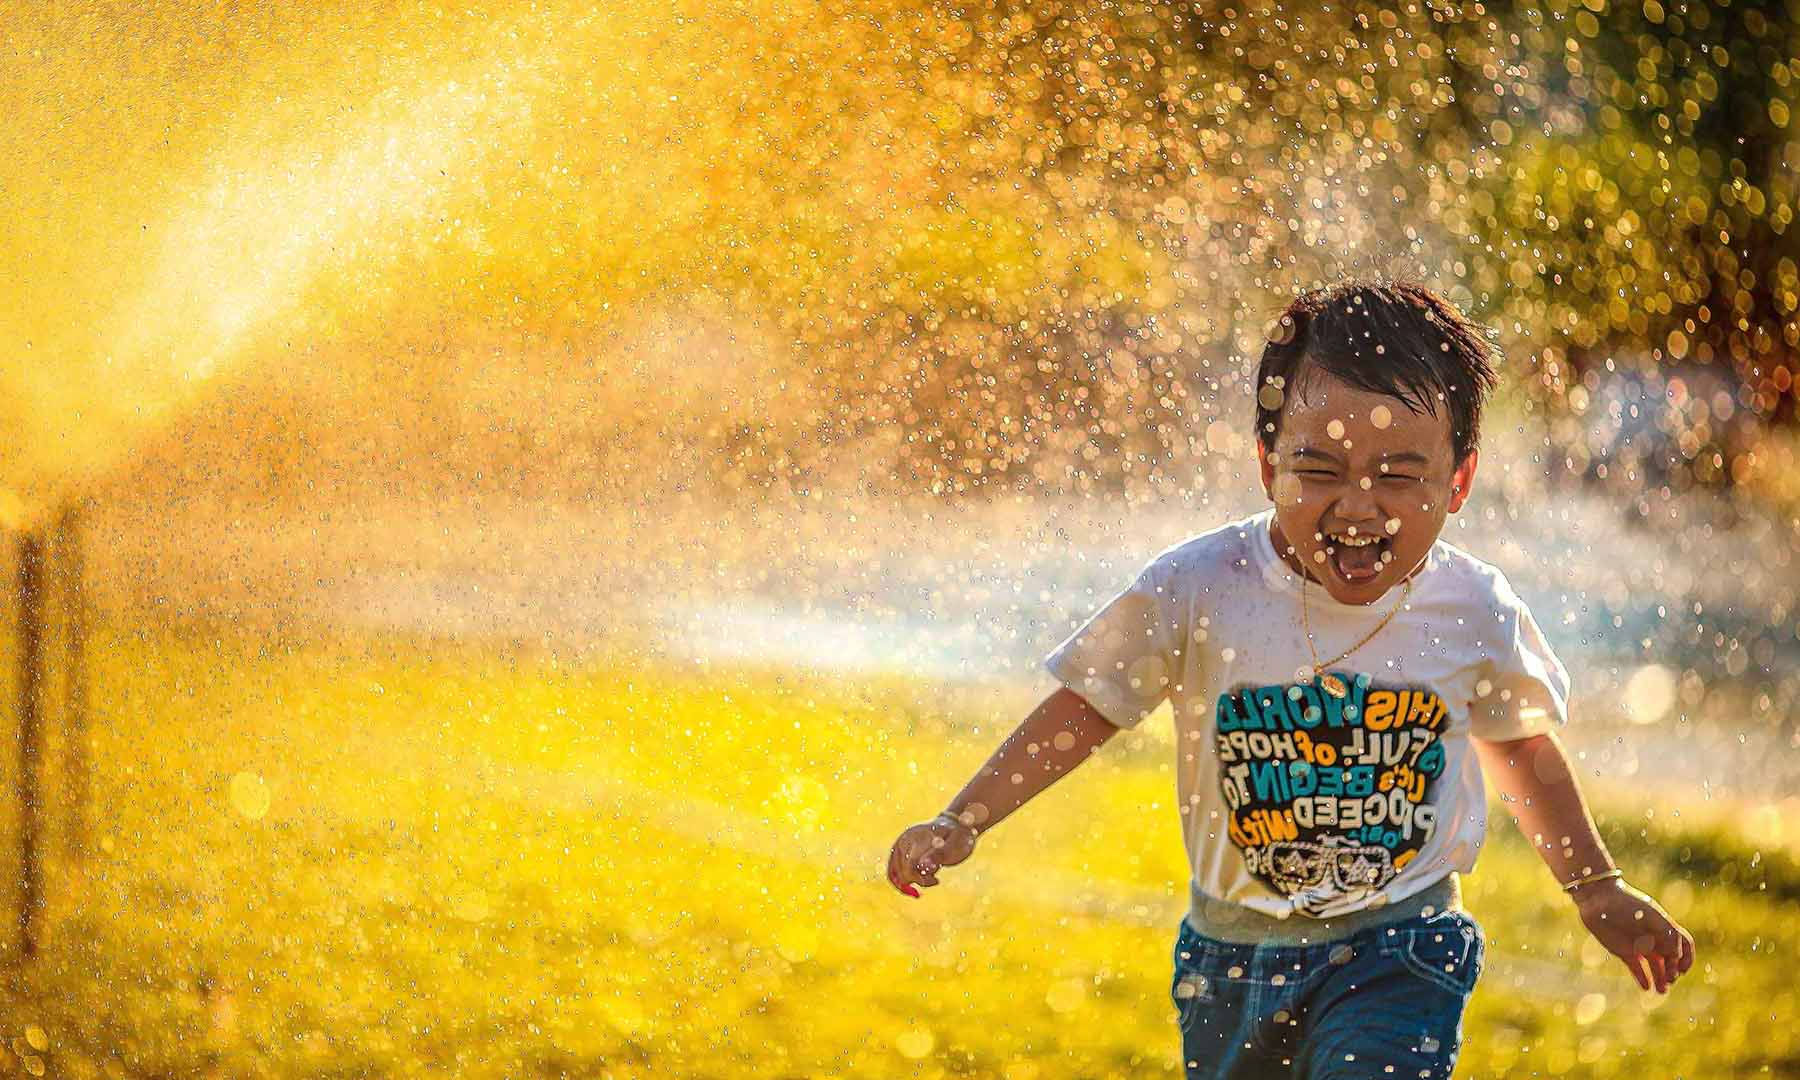 Child runs through lawn sprinkler on a warm summer day